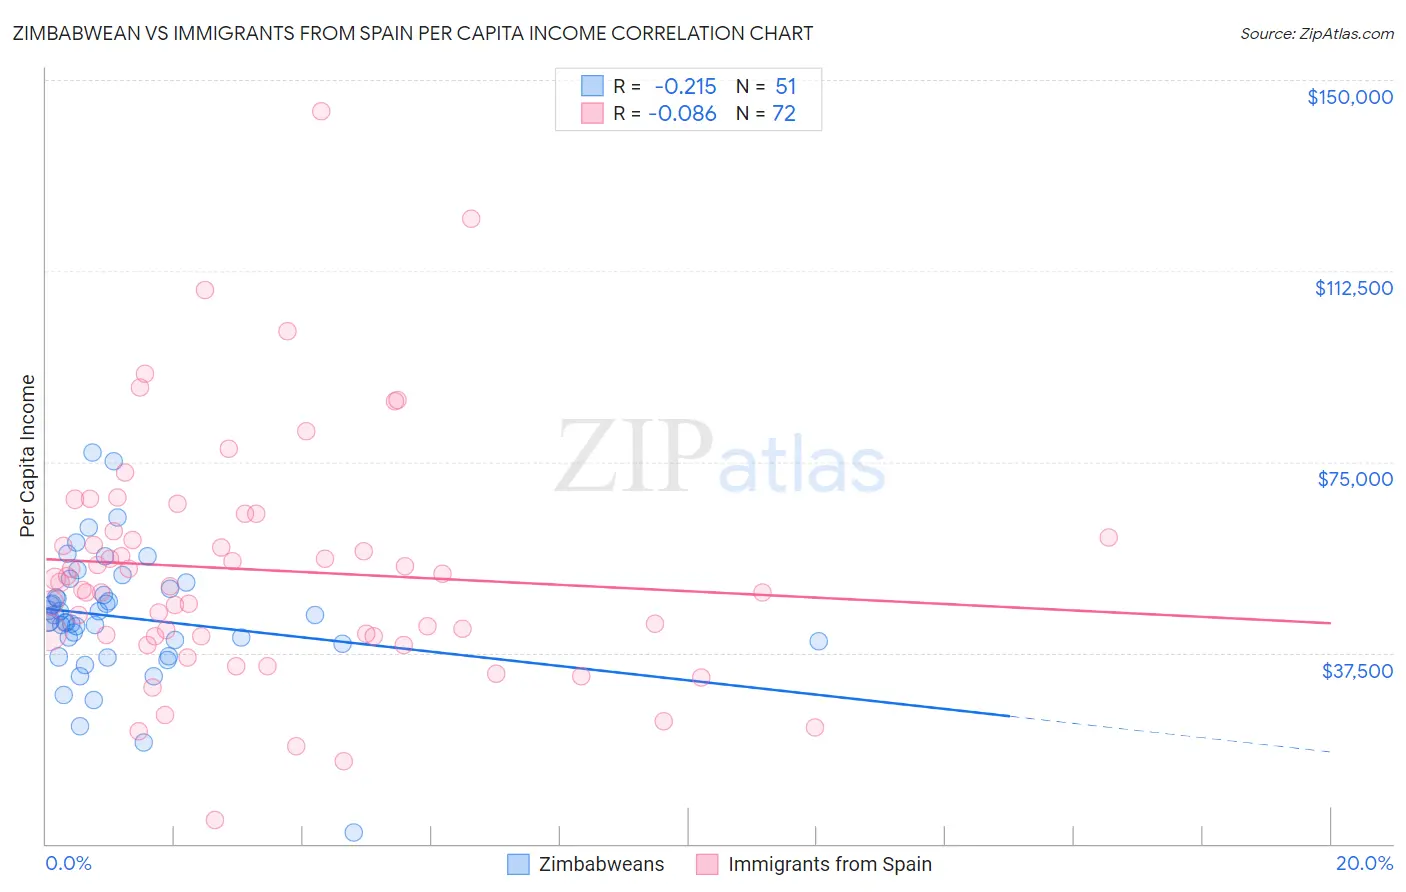 Zimbabwean vs Immigrants from Spain Per Capita Income